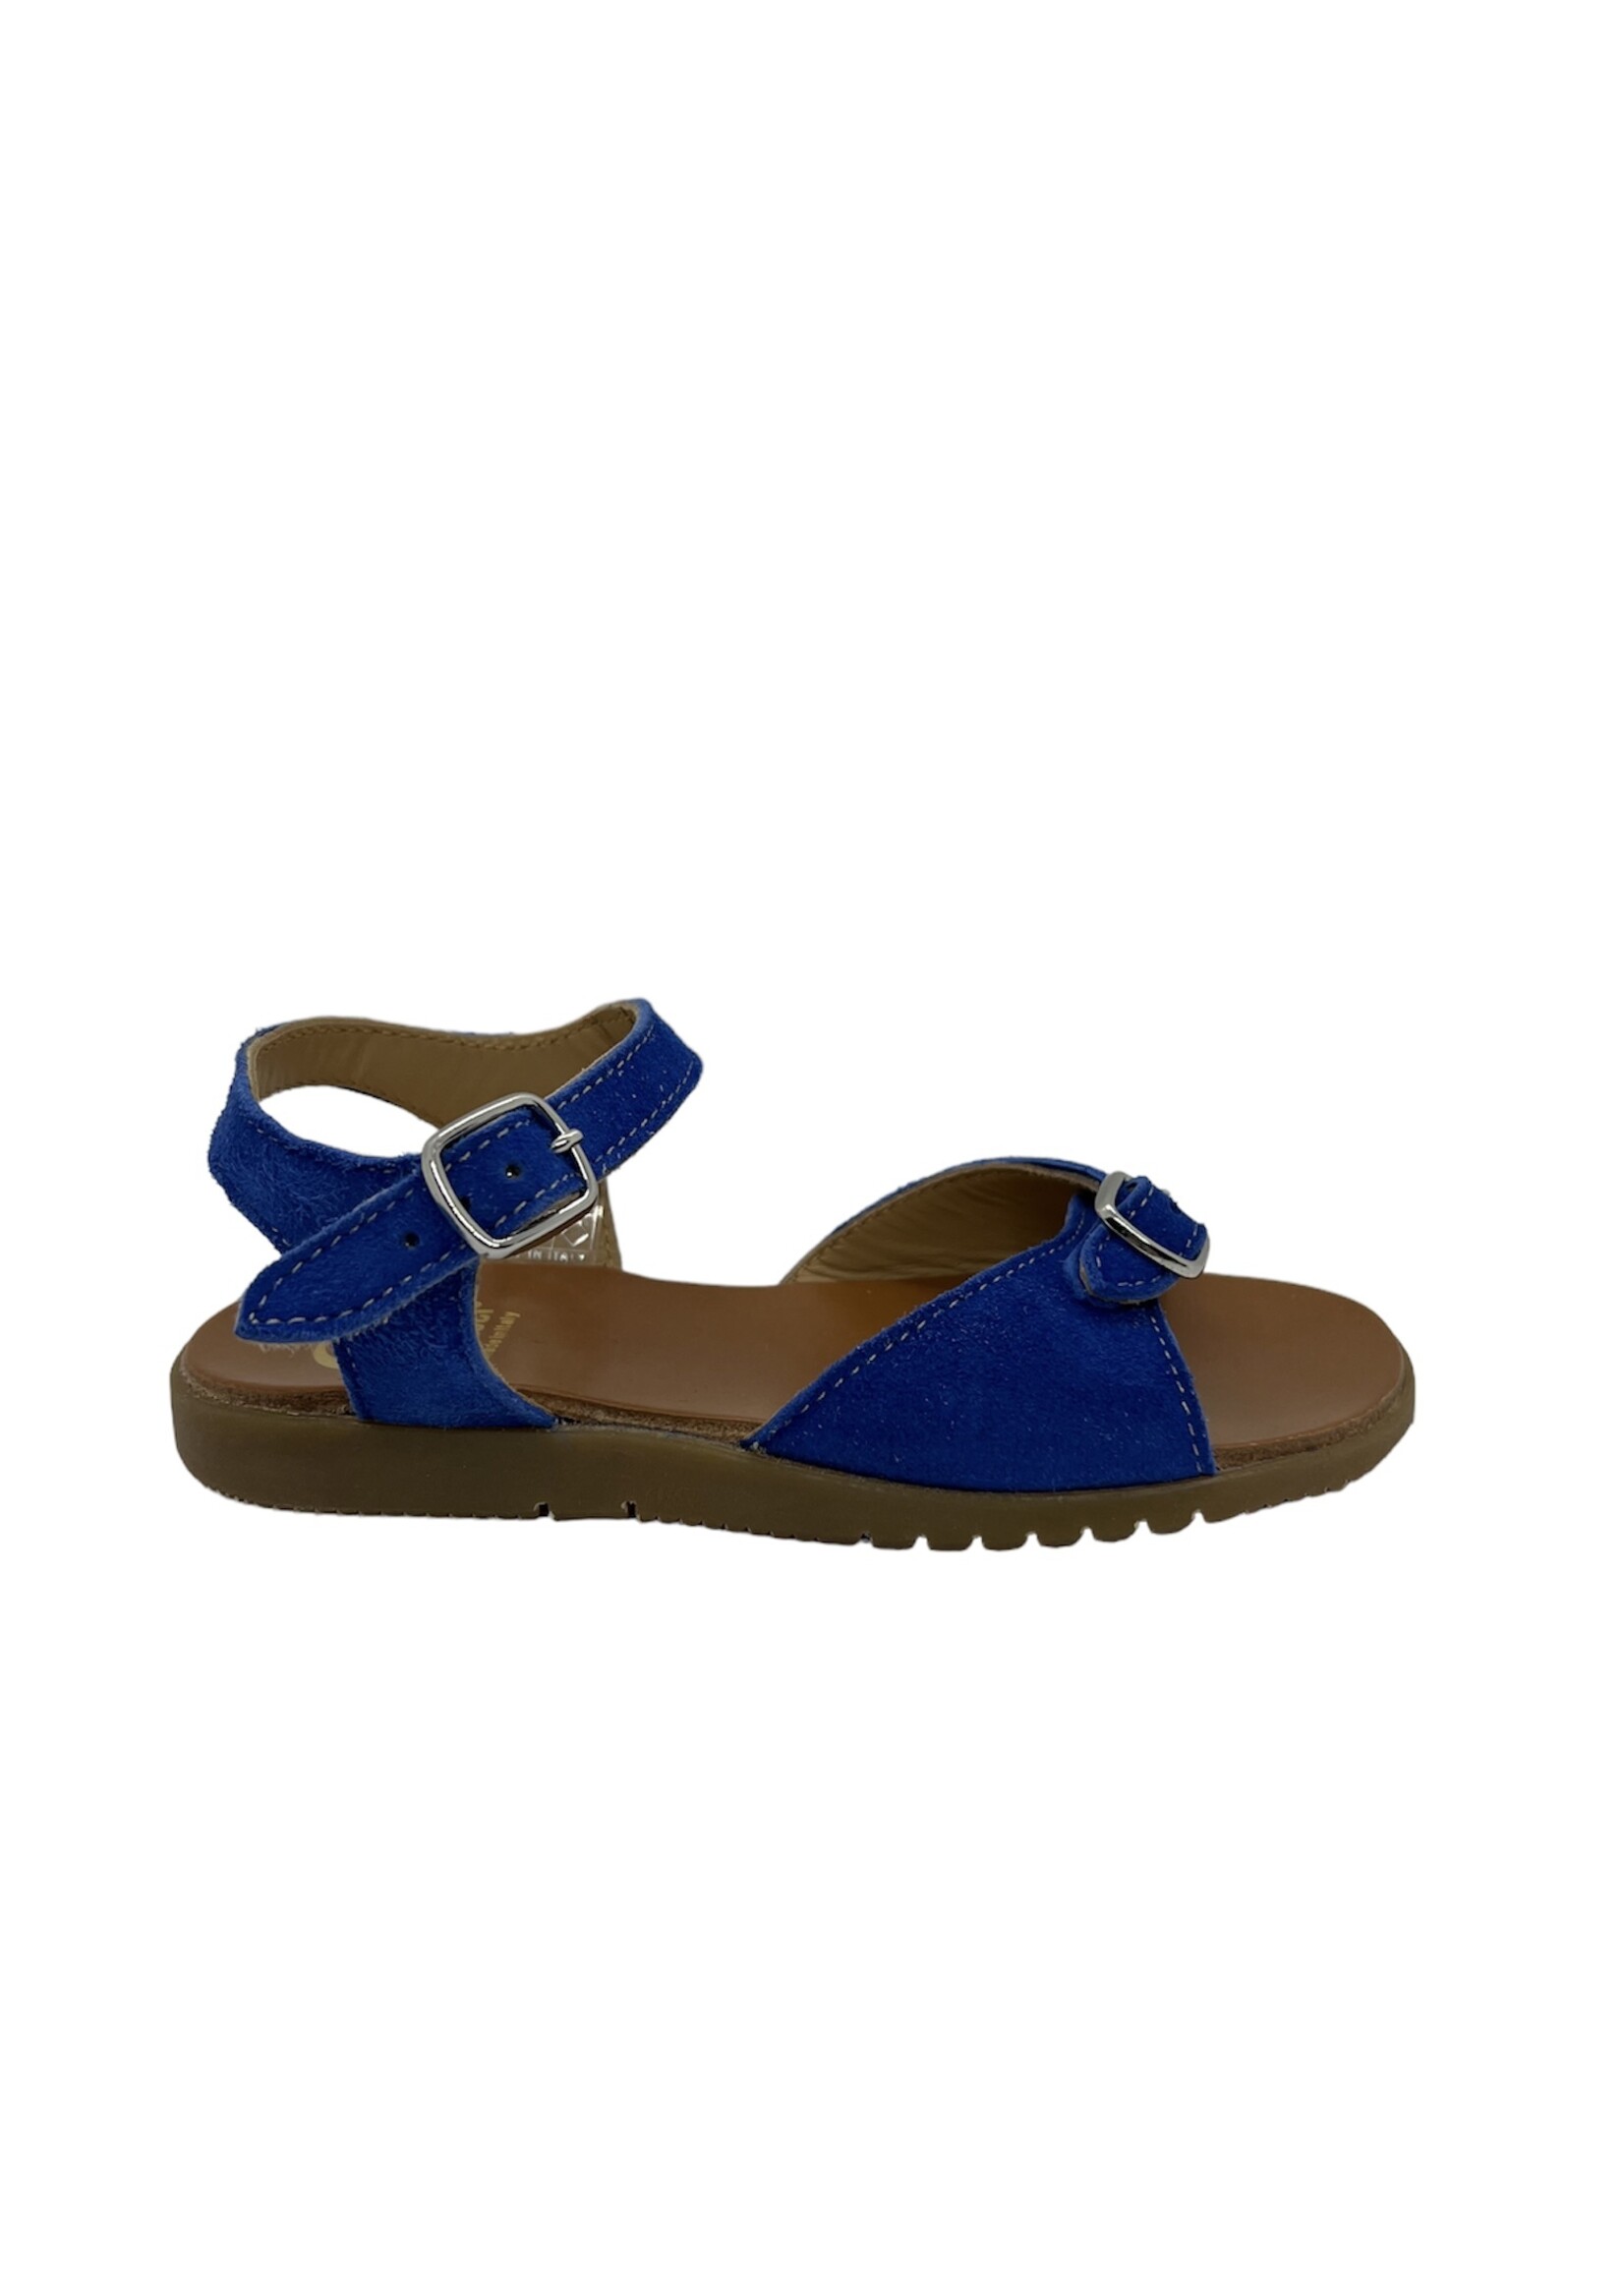 Gallucci J00455 zaffiro blauw sandaal